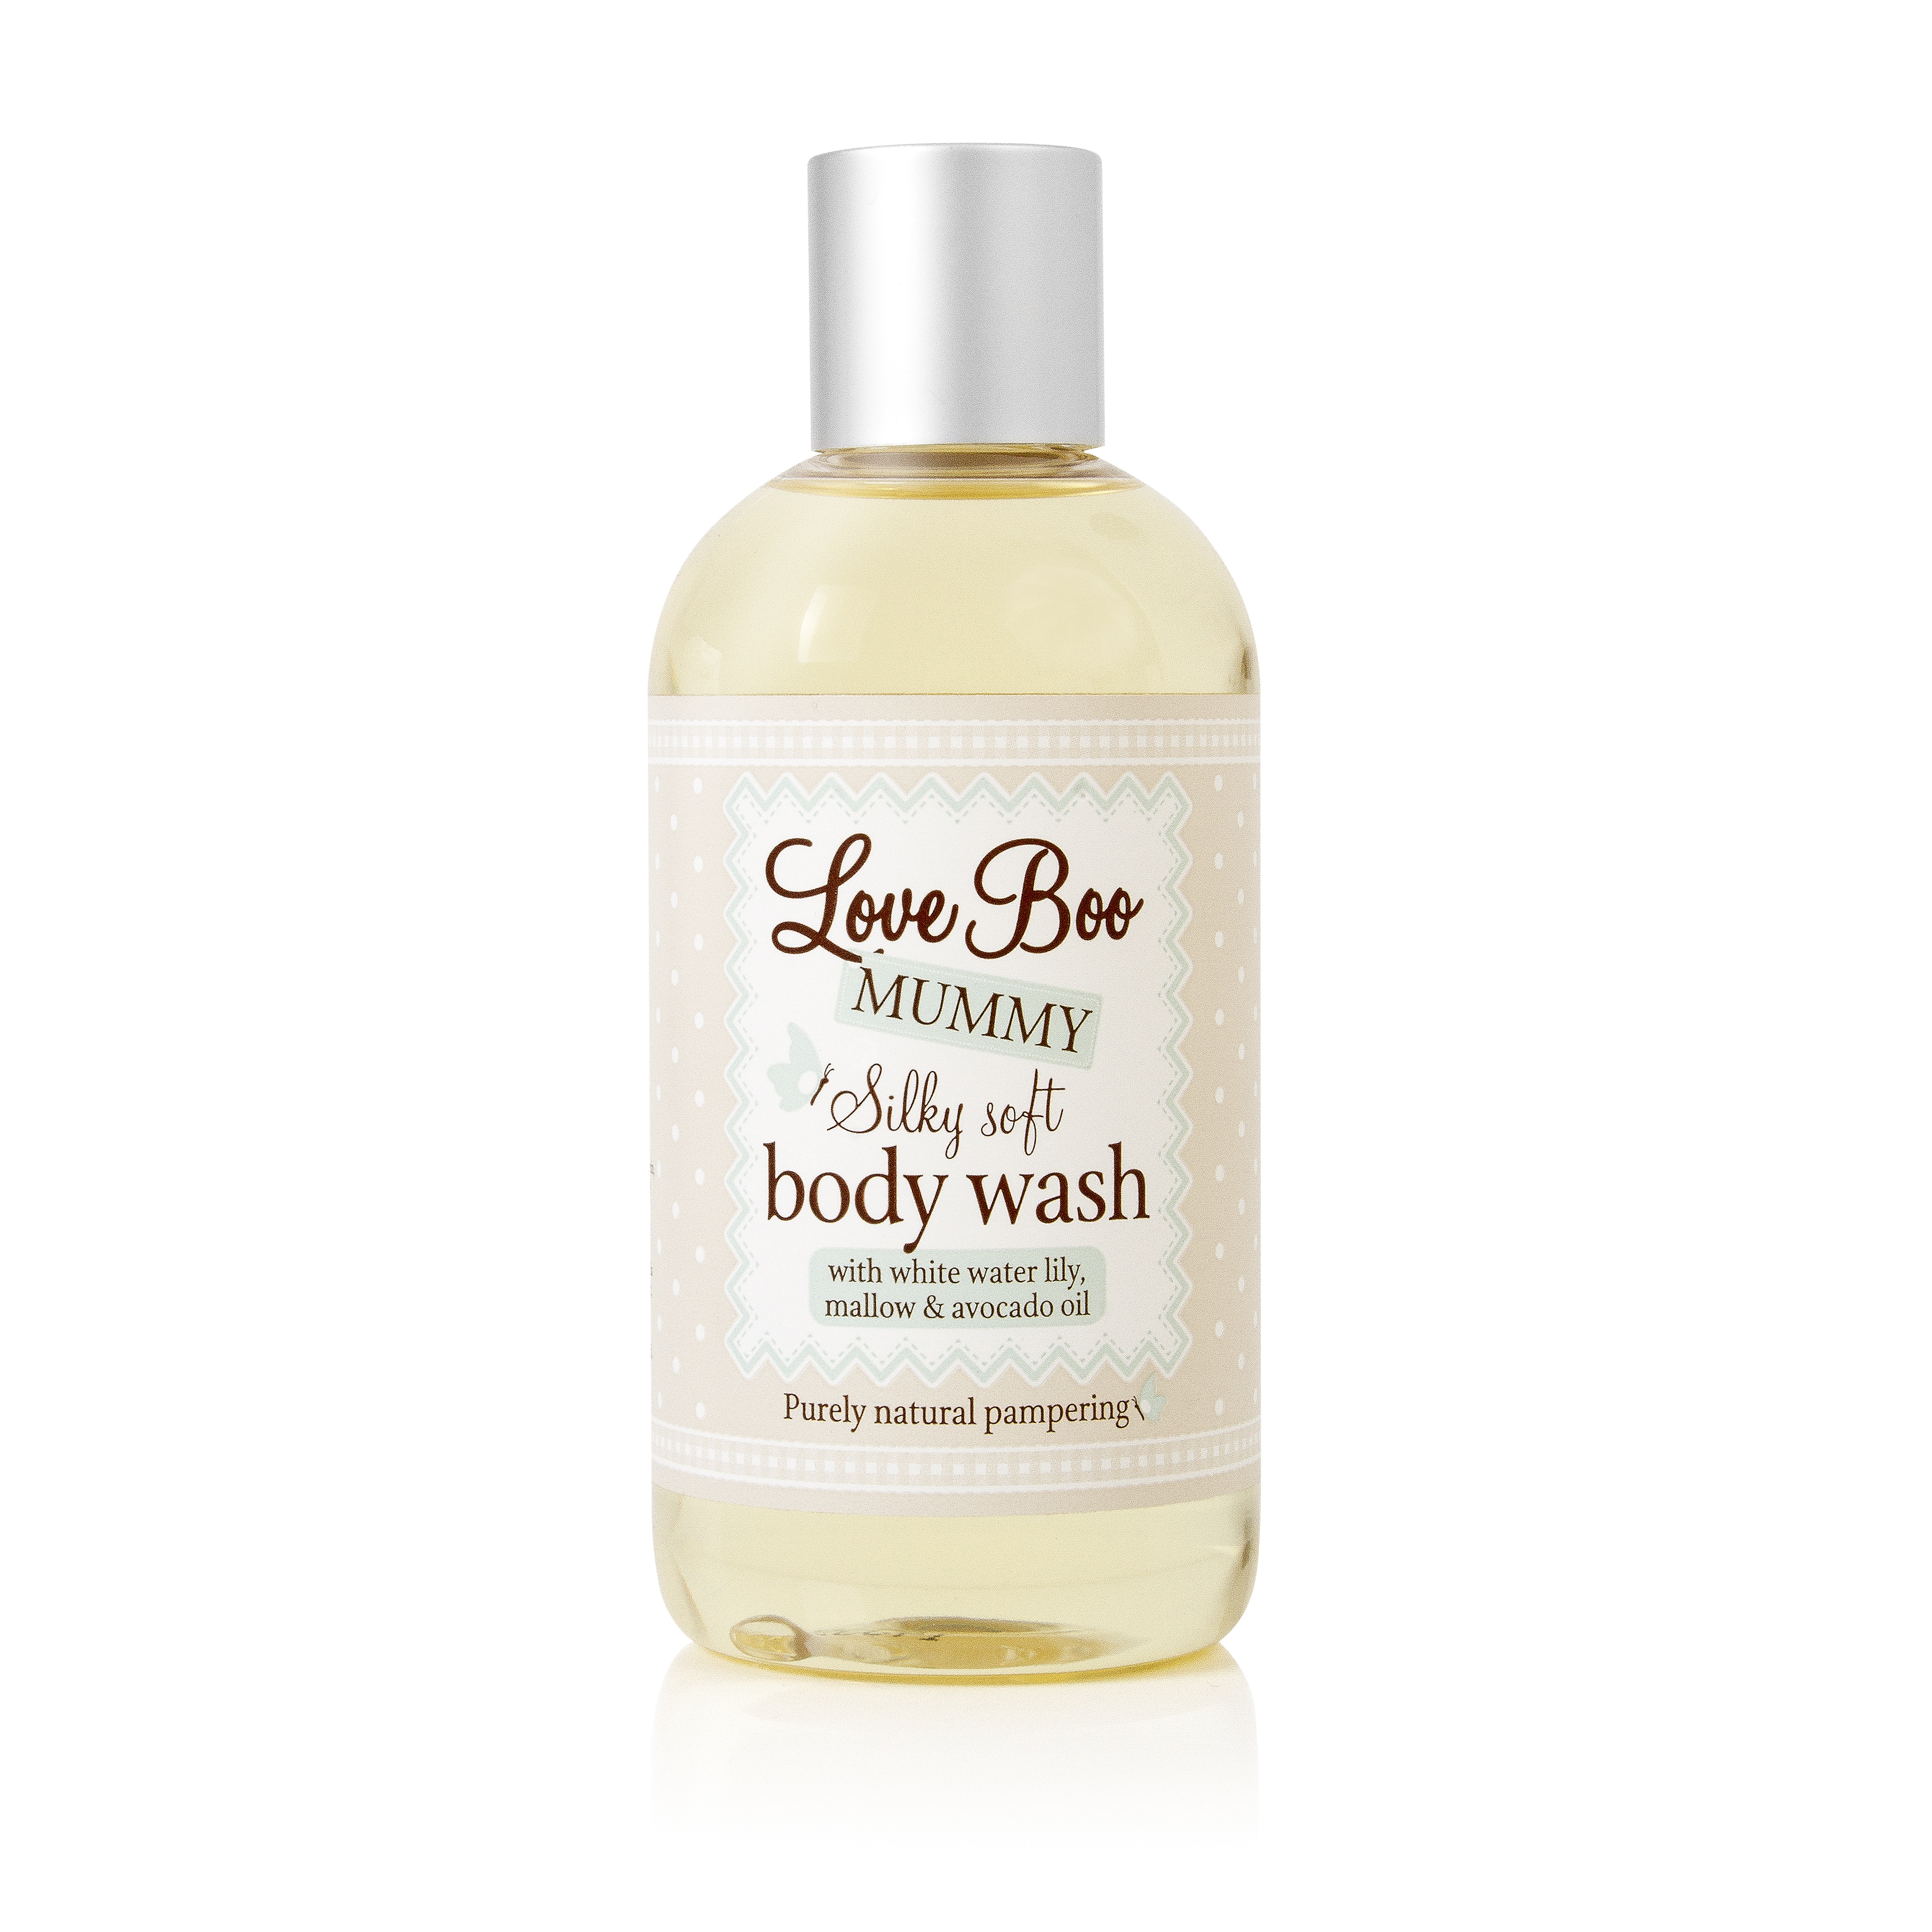 Love Boo Body Wash, 250 ml